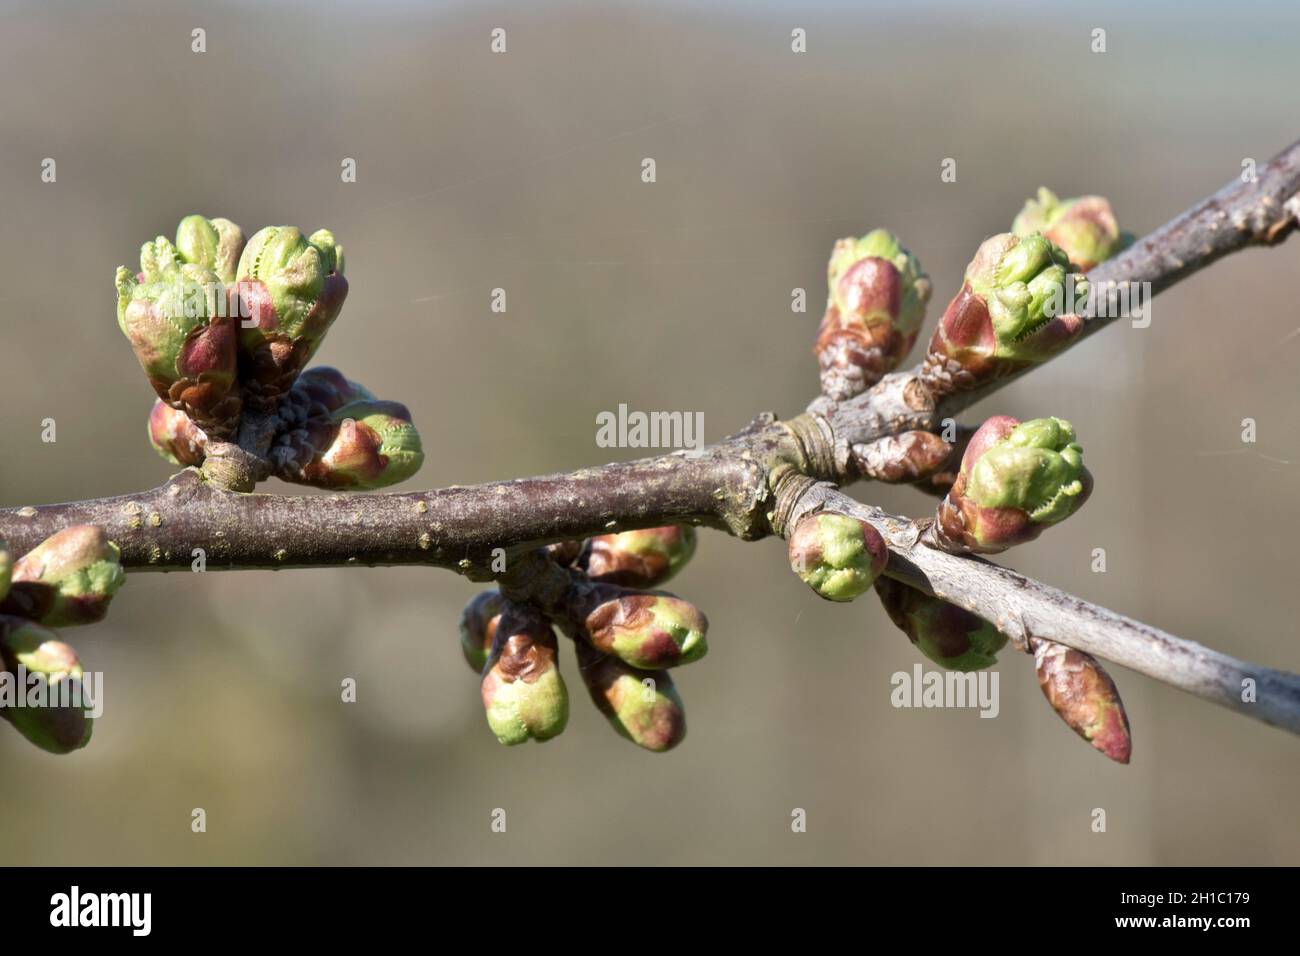 Cereza comestible dulce (Prus avium) y cultivar comestible con brotes que se desarrollan en ramas sin hojas a principios de la primavera, Berkshire, marzo Foto de stock